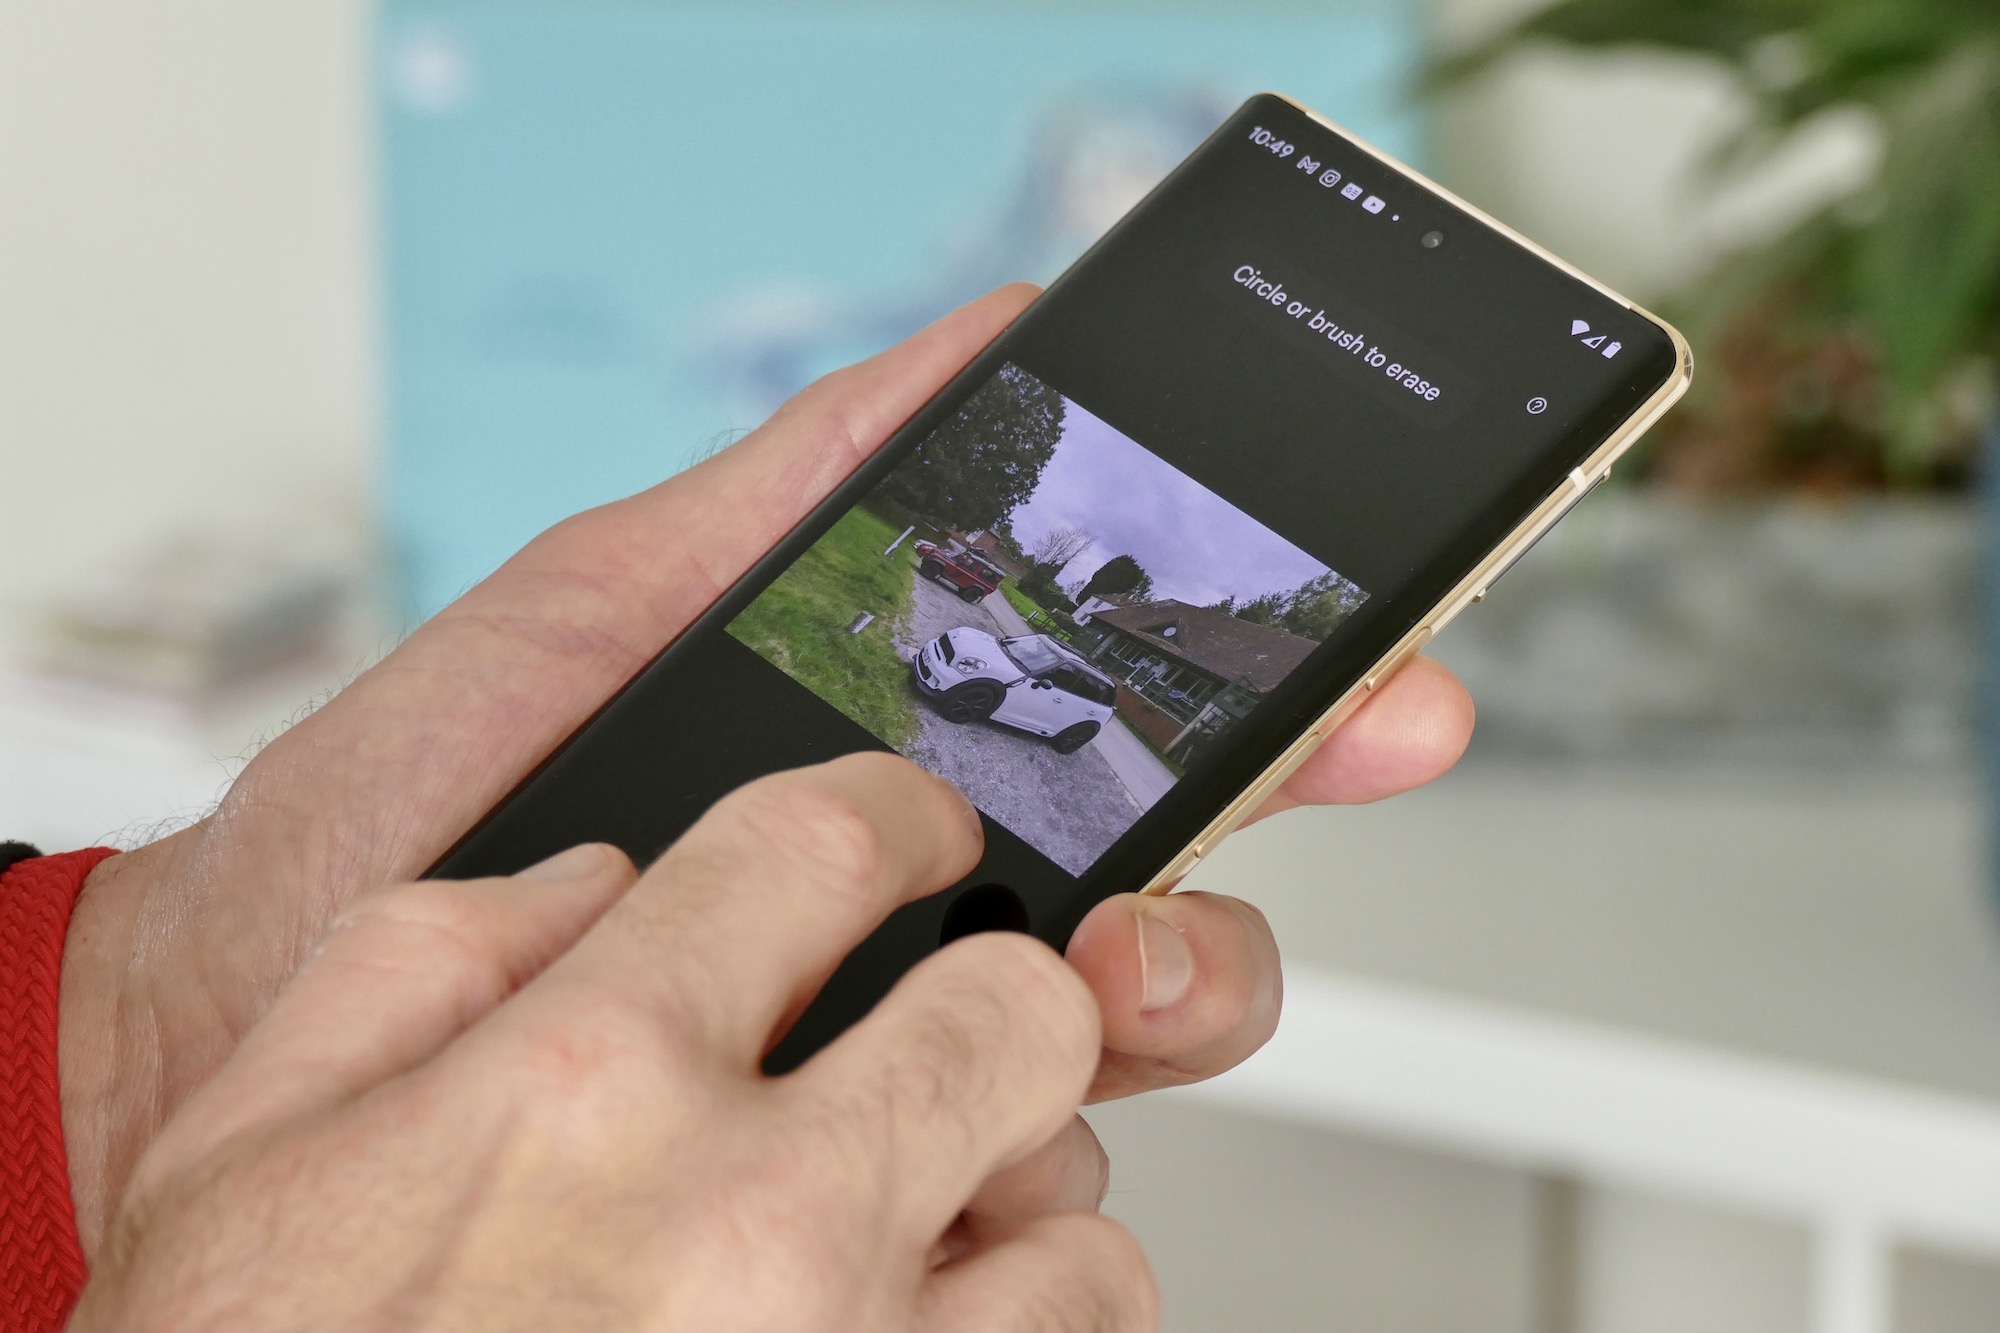 Khám phá sự tươi mới, hoàn toàn đổi mới với chiếc điện thoại Pixel 6 Pro - một trong những sản phẩm đình đám nhất của năm nay! Hình ảnh cực kỳ ấn tượng, màn hình sắc nét và camera đỉnh cao đang chờ bạn khám phá! 